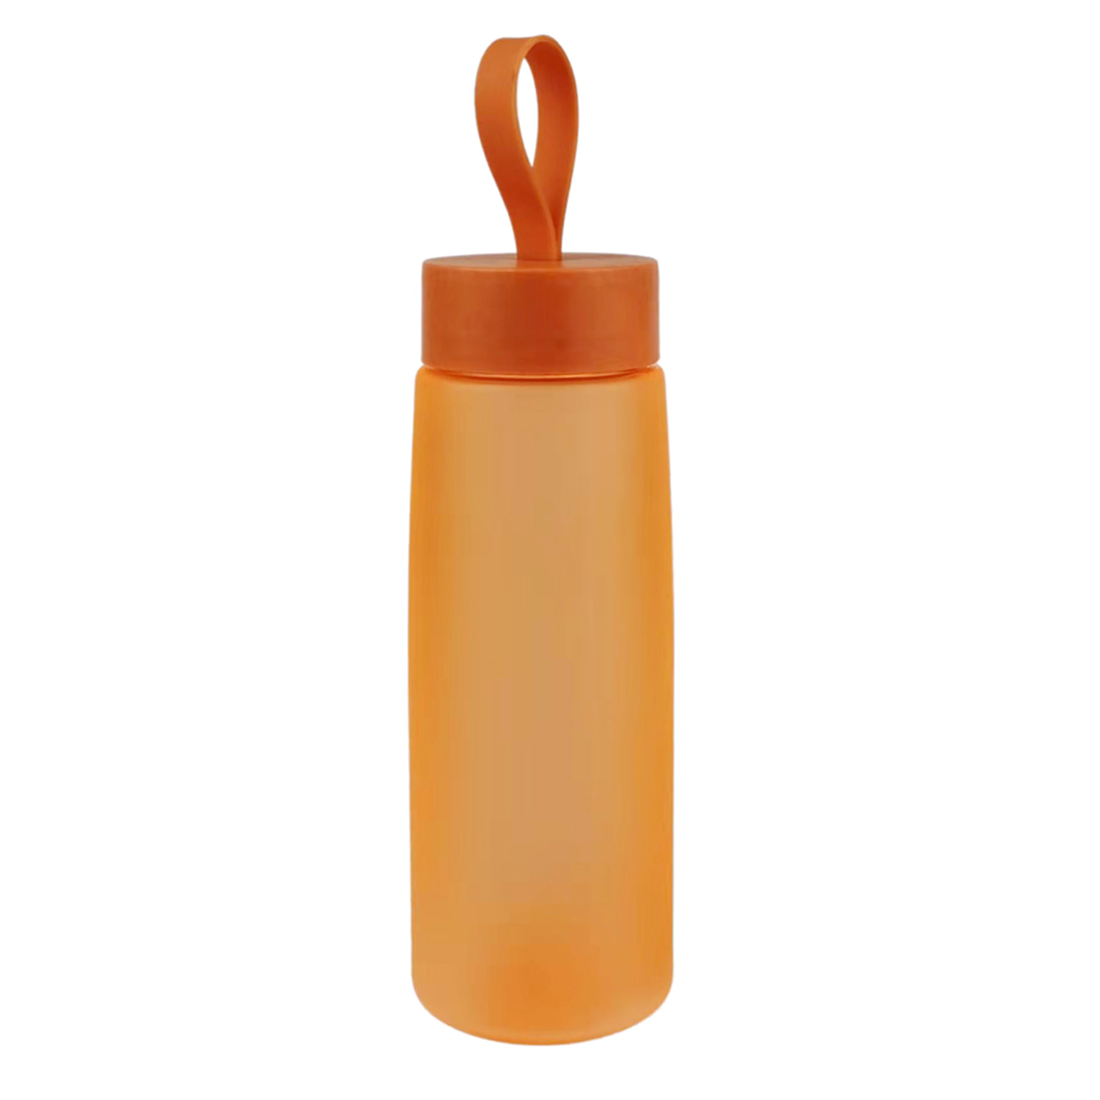 Бутылка для воды Flappy, оранжевая